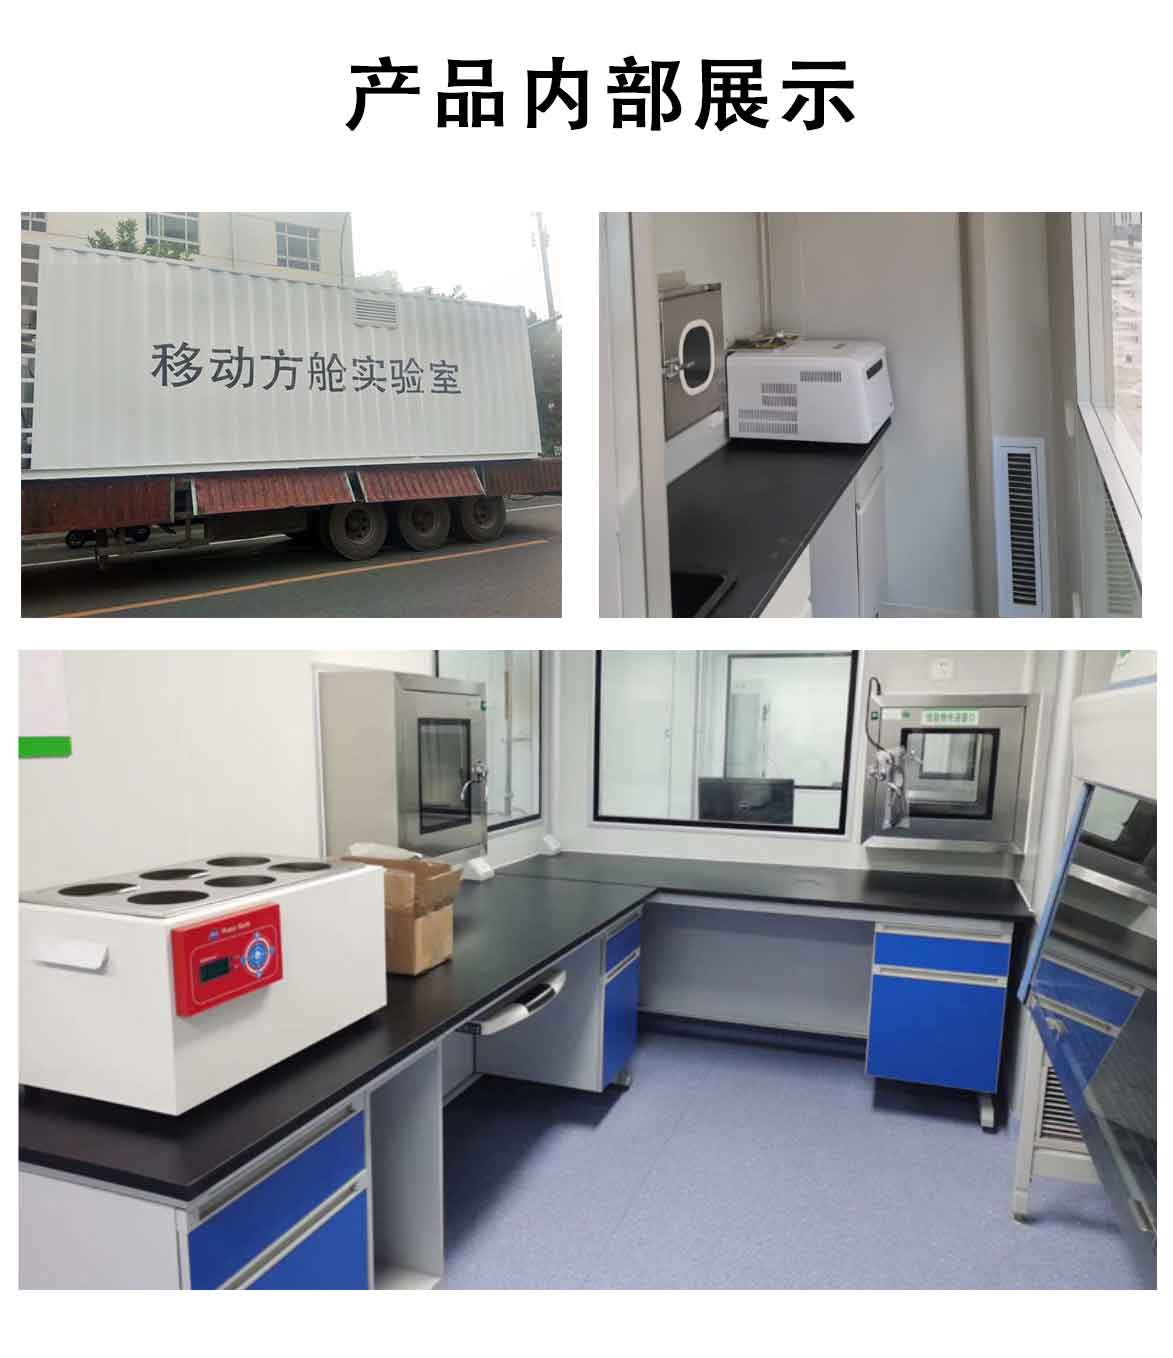 广东科艺普移动PCR方舱实验室厂家_助力核酸检测系统解决方案---科艺普集团_03